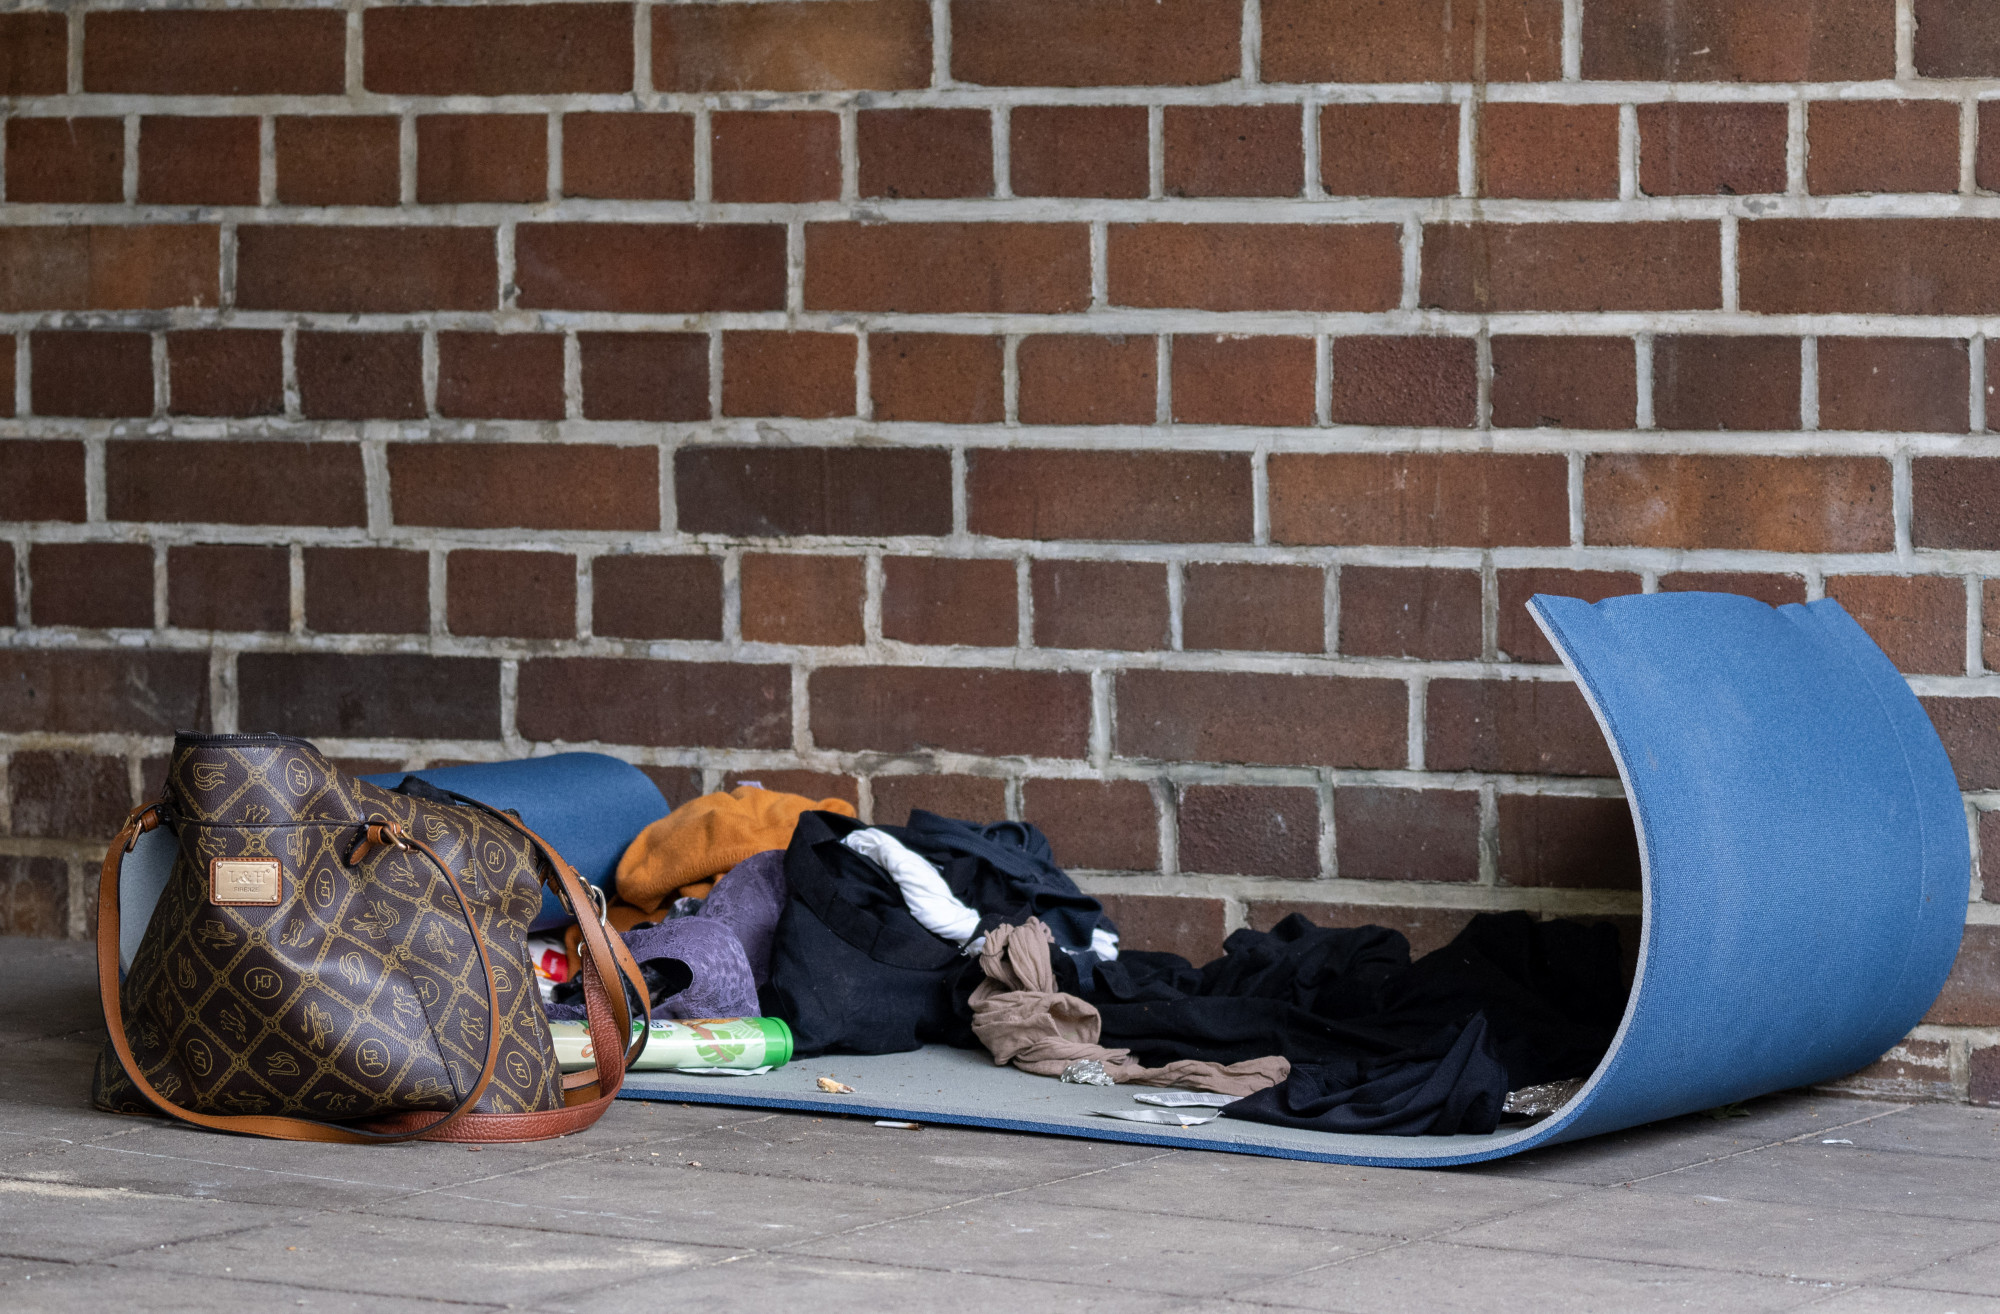 Kétmillió forintot adtak hajléktalanoknak Kanadában – vajon mire költötték?